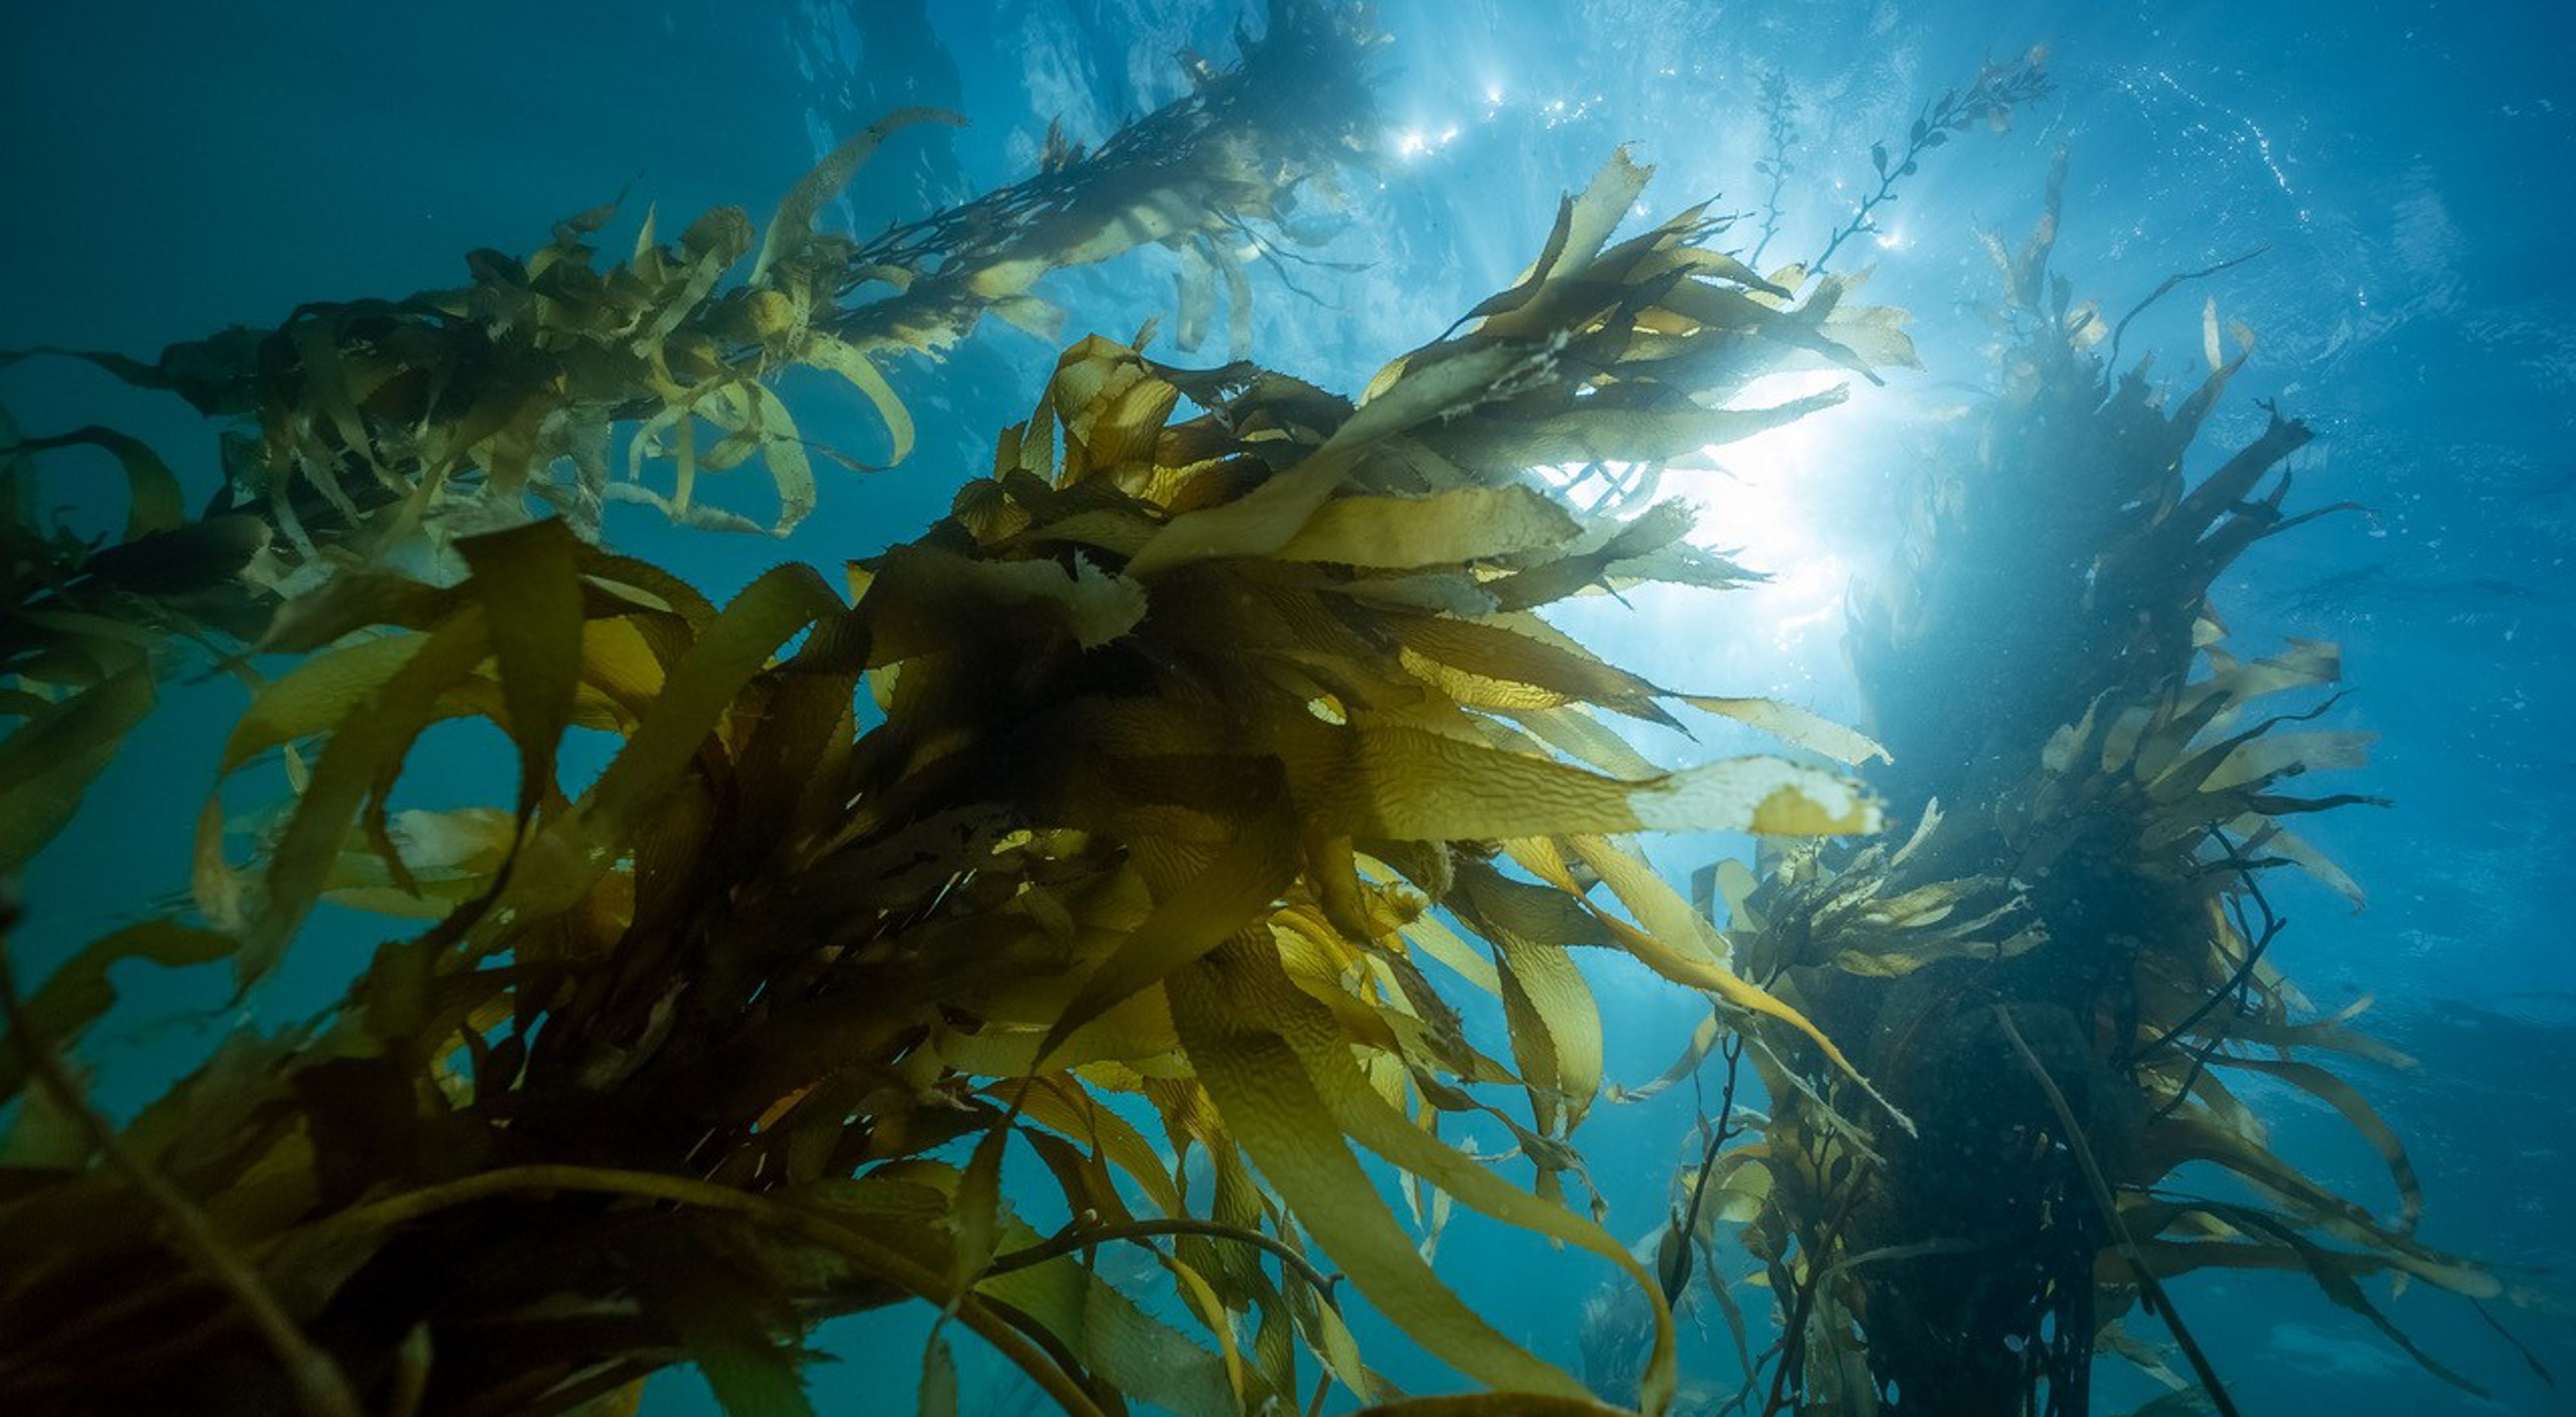 Giant Kelp underwater in Tasmania